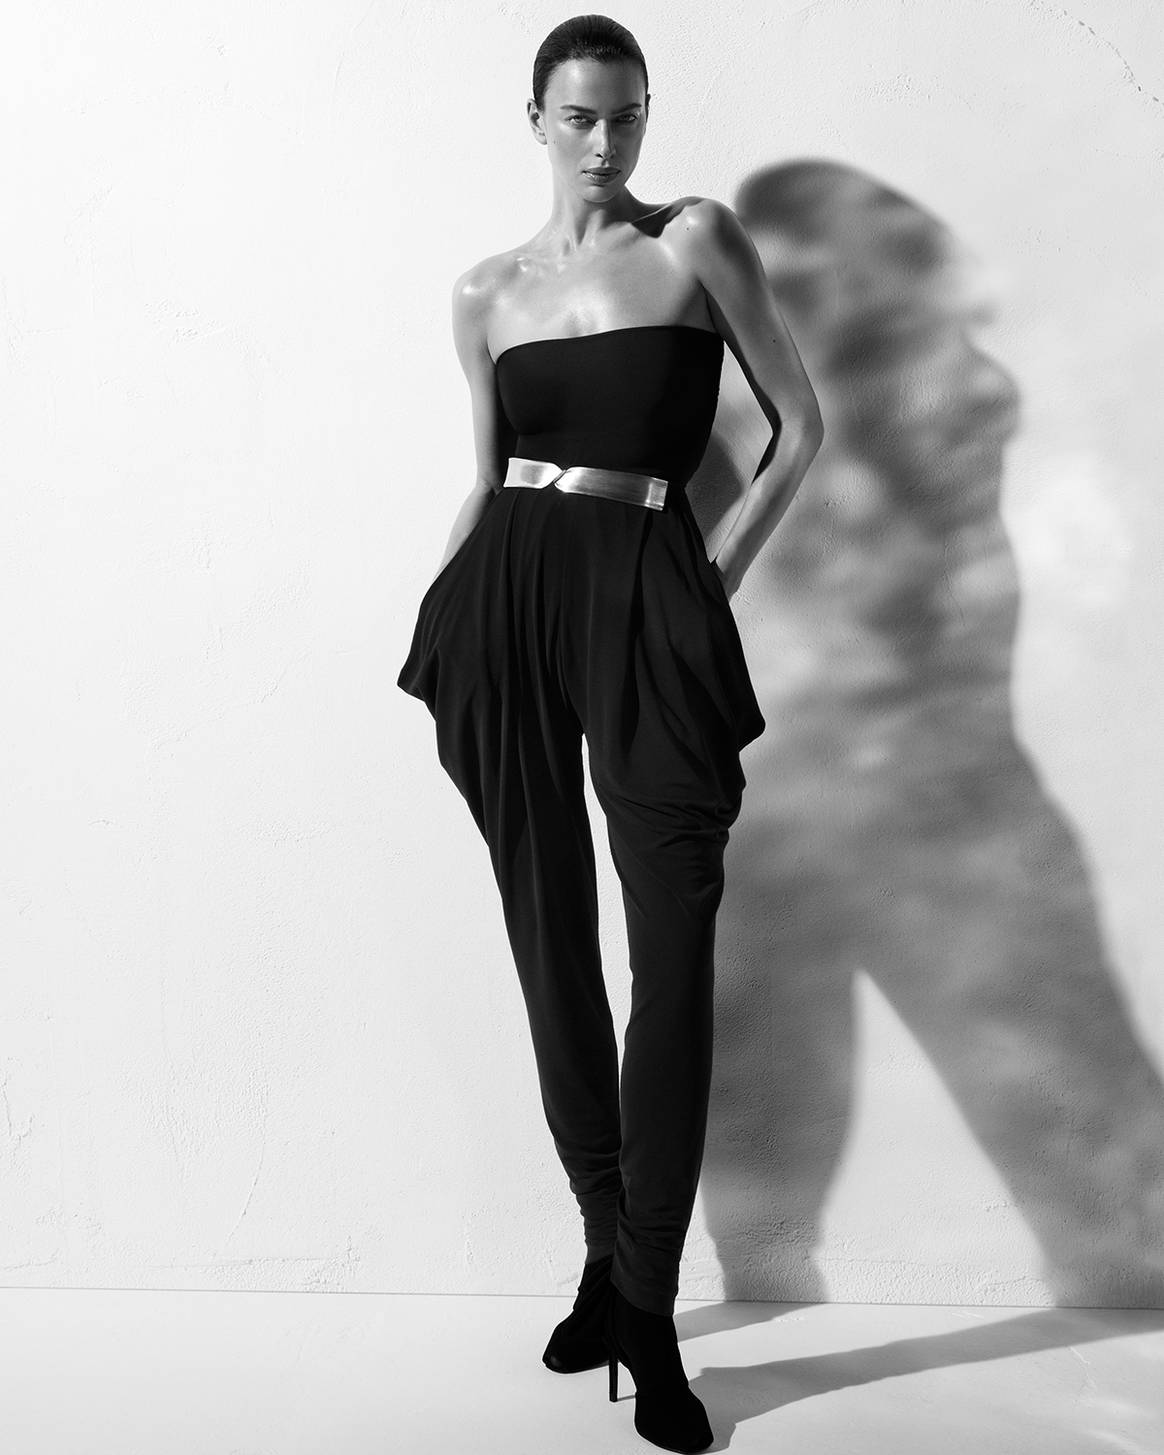 Photo Credits: La modelo rusa Irina Shayk como imagen de campaña de la nueva colección “A New Sensuality” de Zara. Fotografía de cortesía.